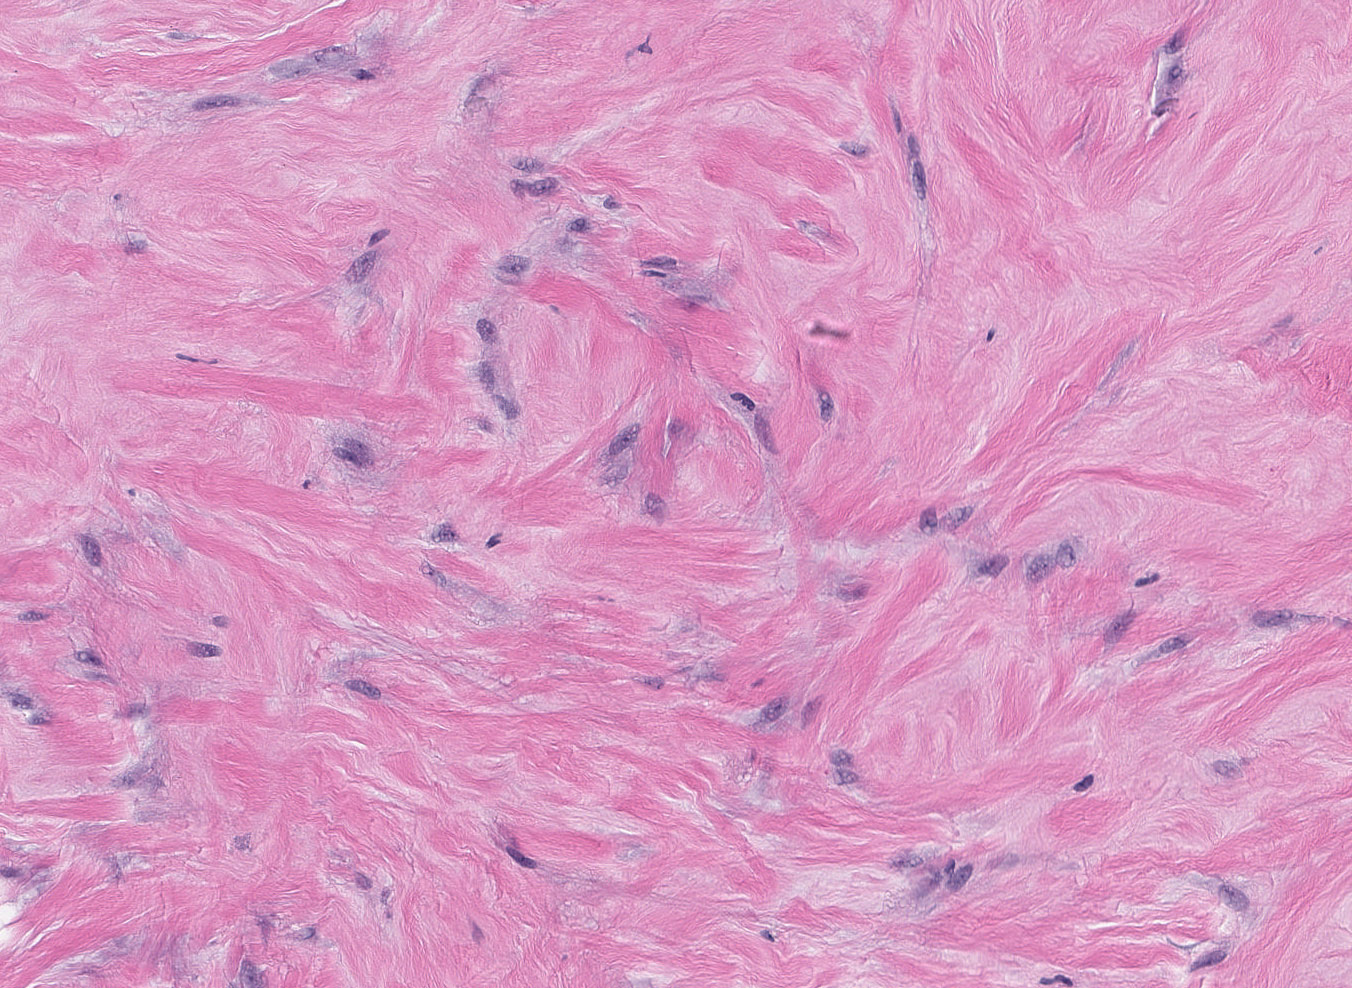 Epithelioid myofibroblasts